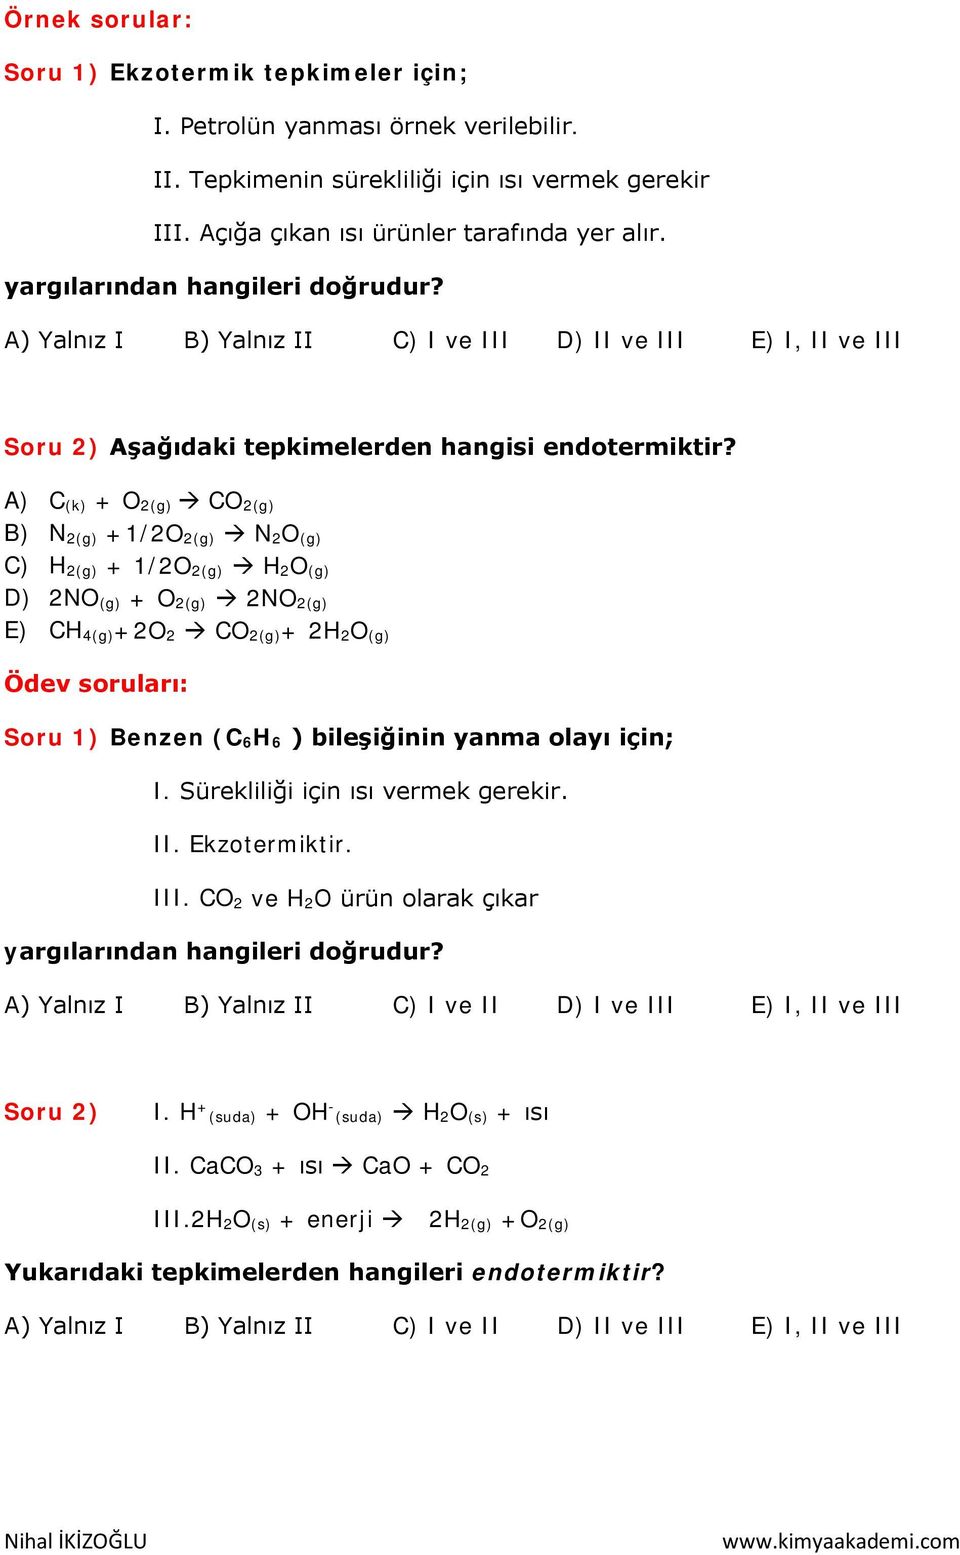 A) C (k) + O 2(g) CO 2(g) B) N 2(g) +1/2O 2(g) N 2O (g) C) H 2(g) + 1/2O 2(g) H 2O (g) D) 2NO (g) + O 2(g) 2NO 2(g) E) CH 4(g)+2O 2 CO 2(g)+ 2H 2O (g) Ödev soruları: Soru 1) Benzen (C 6H 6 )